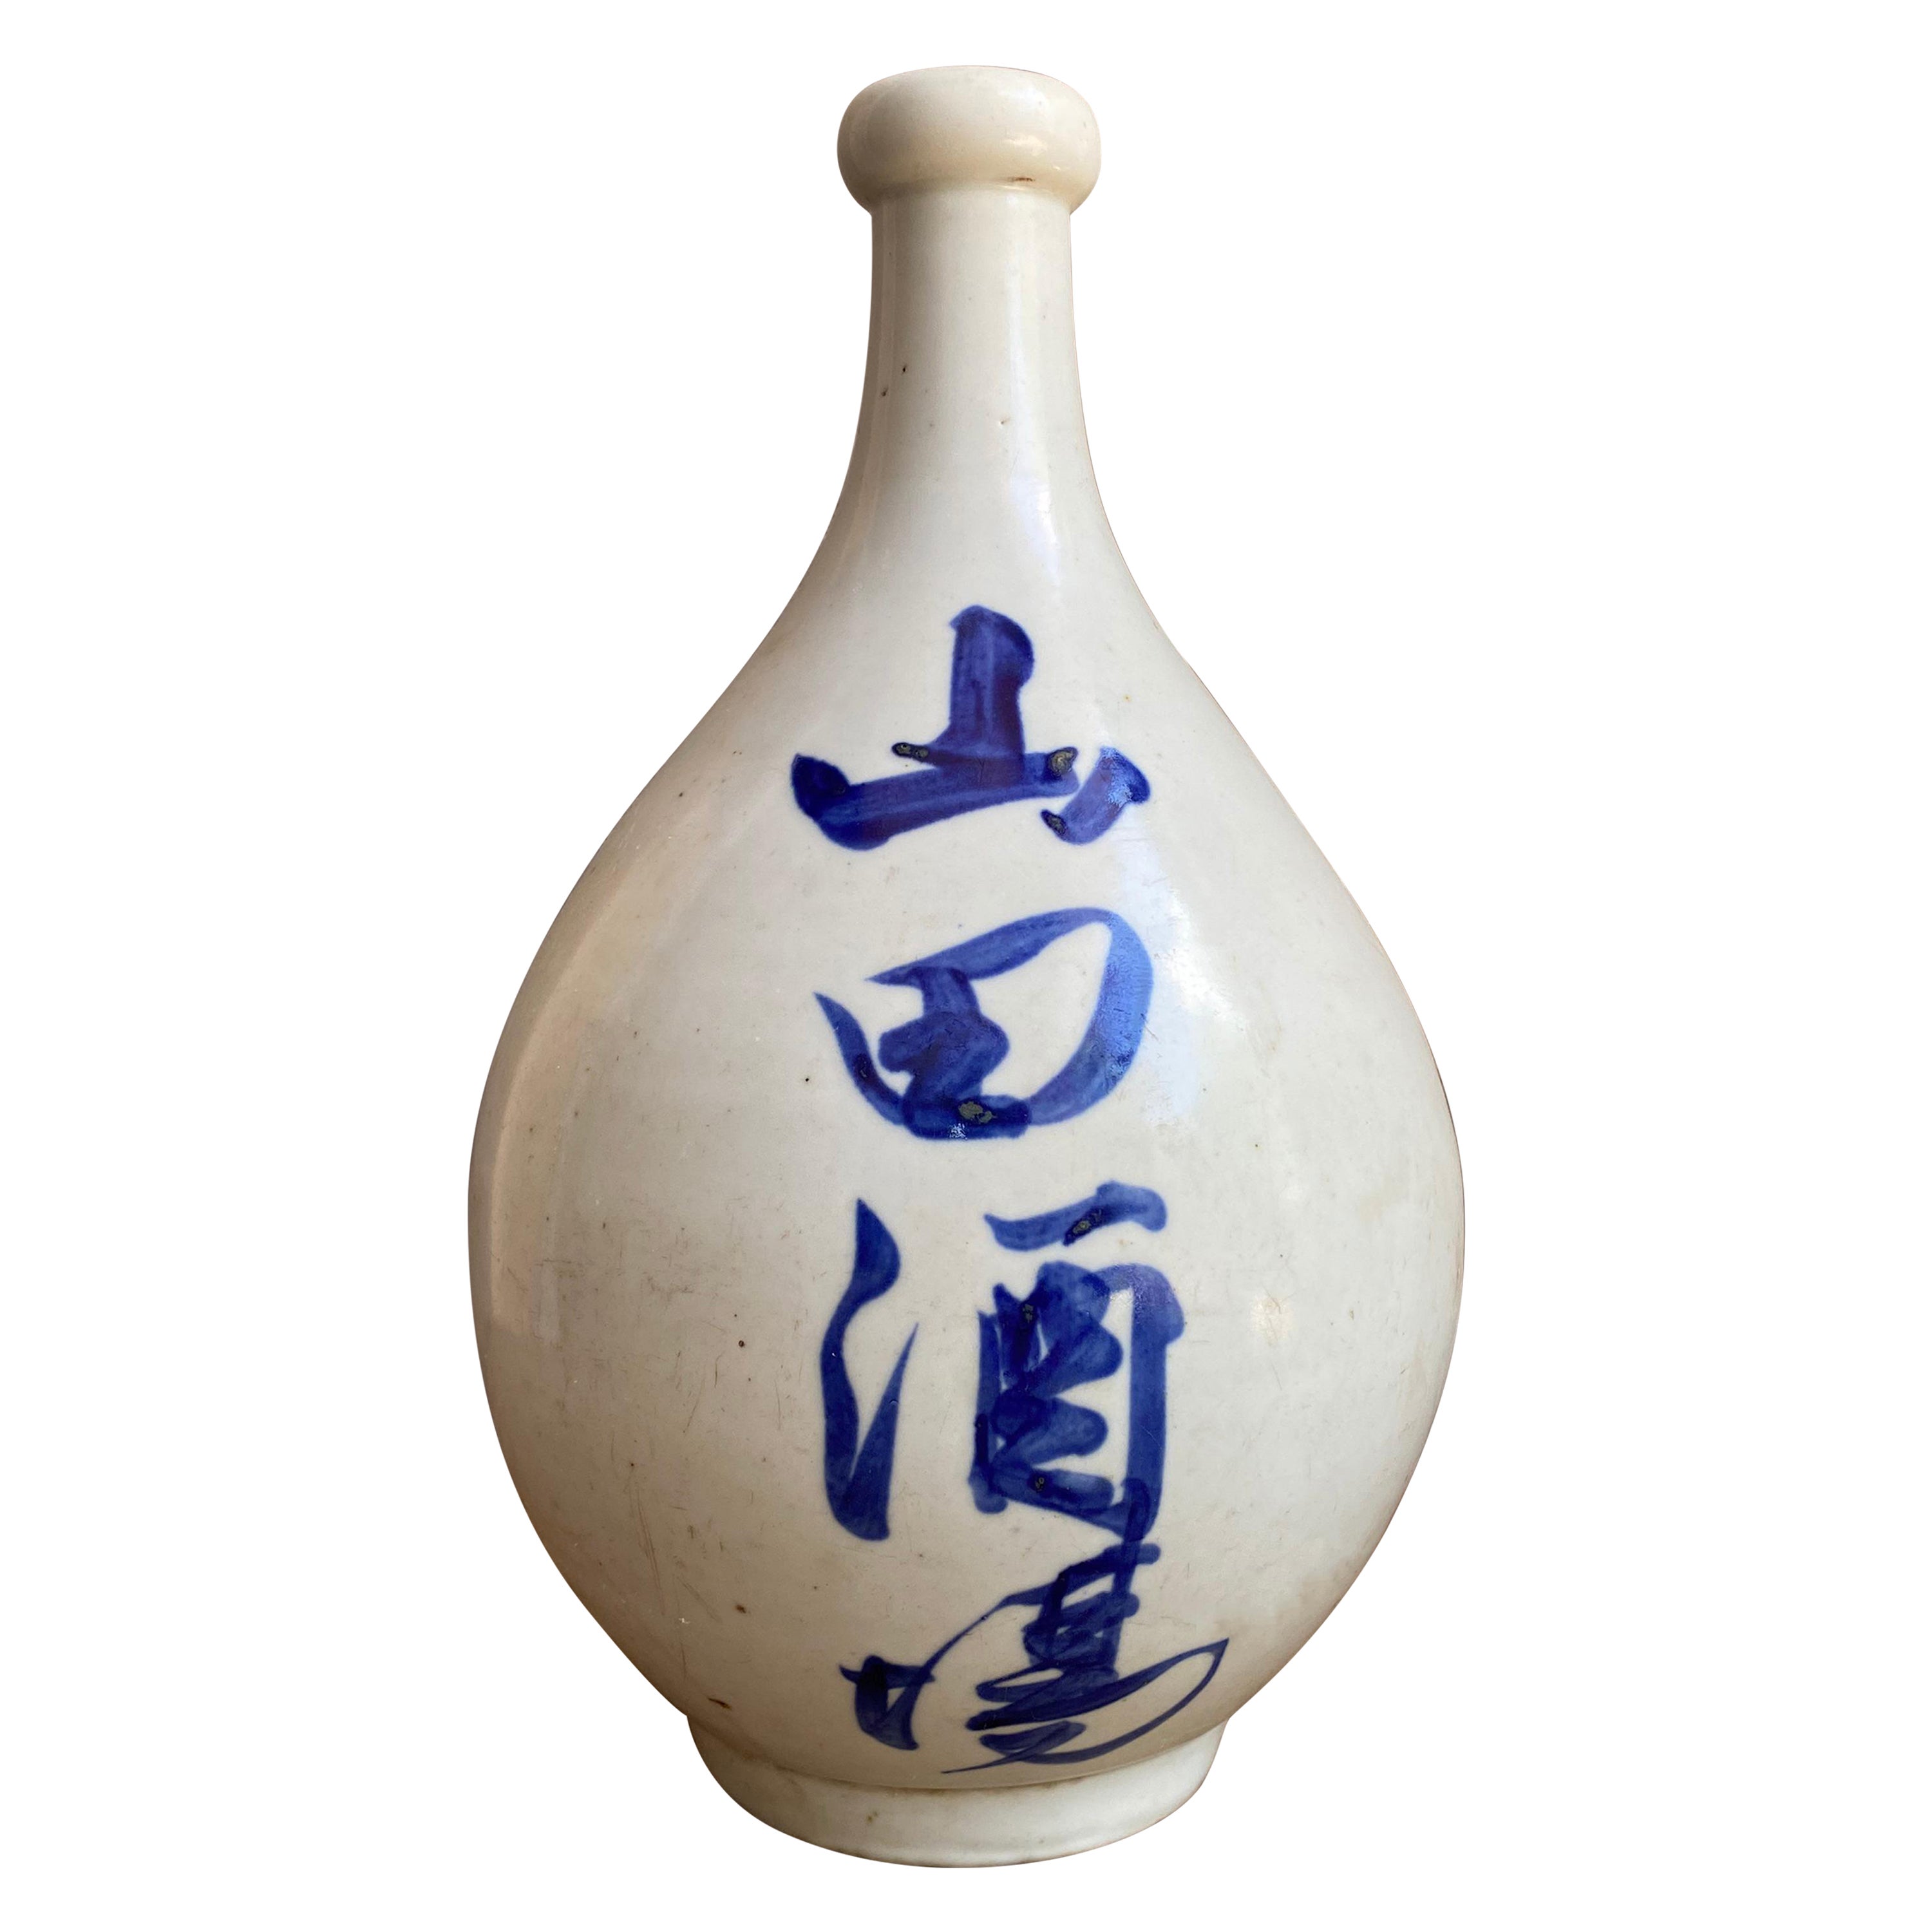 Bouteille de Sake en céramique japonaise avec caractères peints à la main, début du 20e siècle